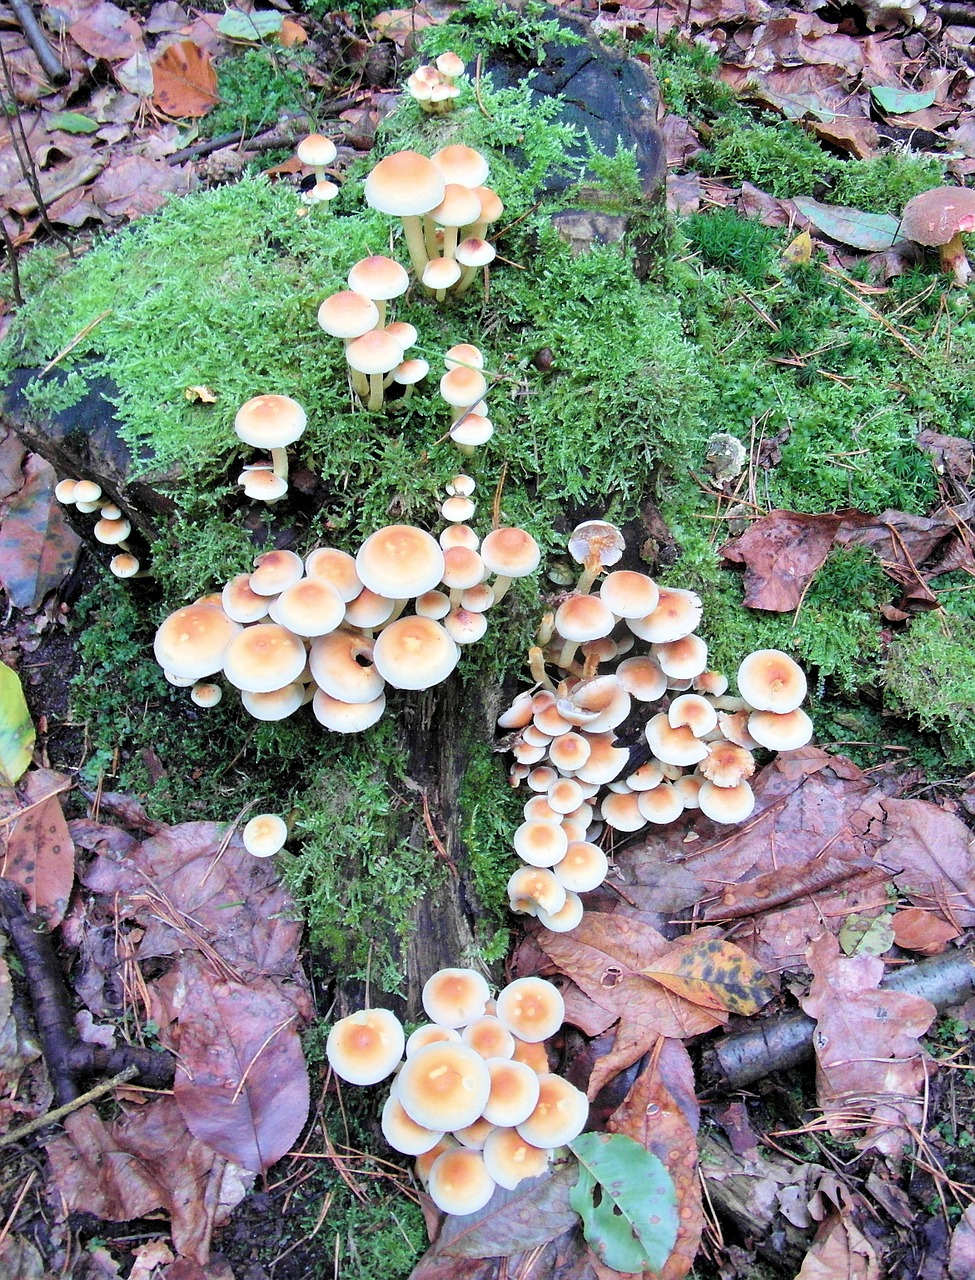 mushrooms sponge tree stump free photo